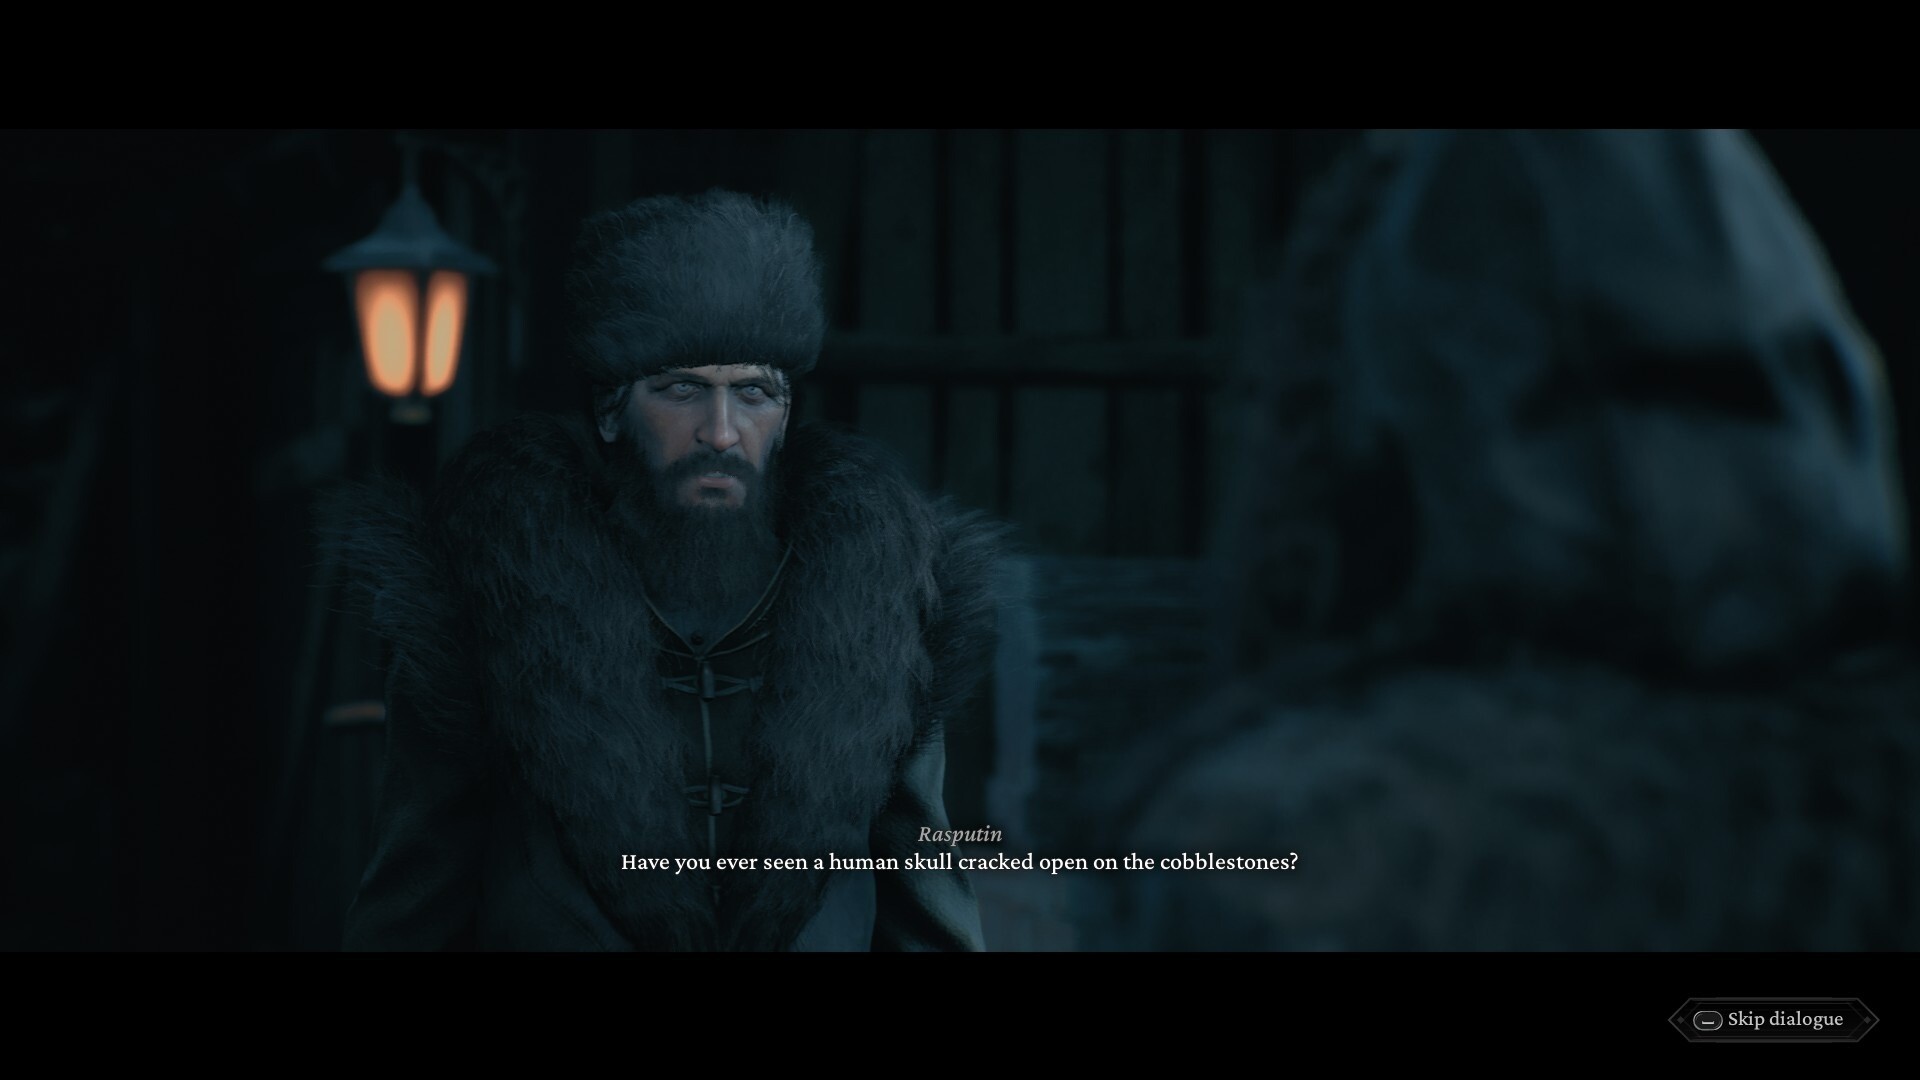 The Thaumaturge, game screenshot, Rasputin